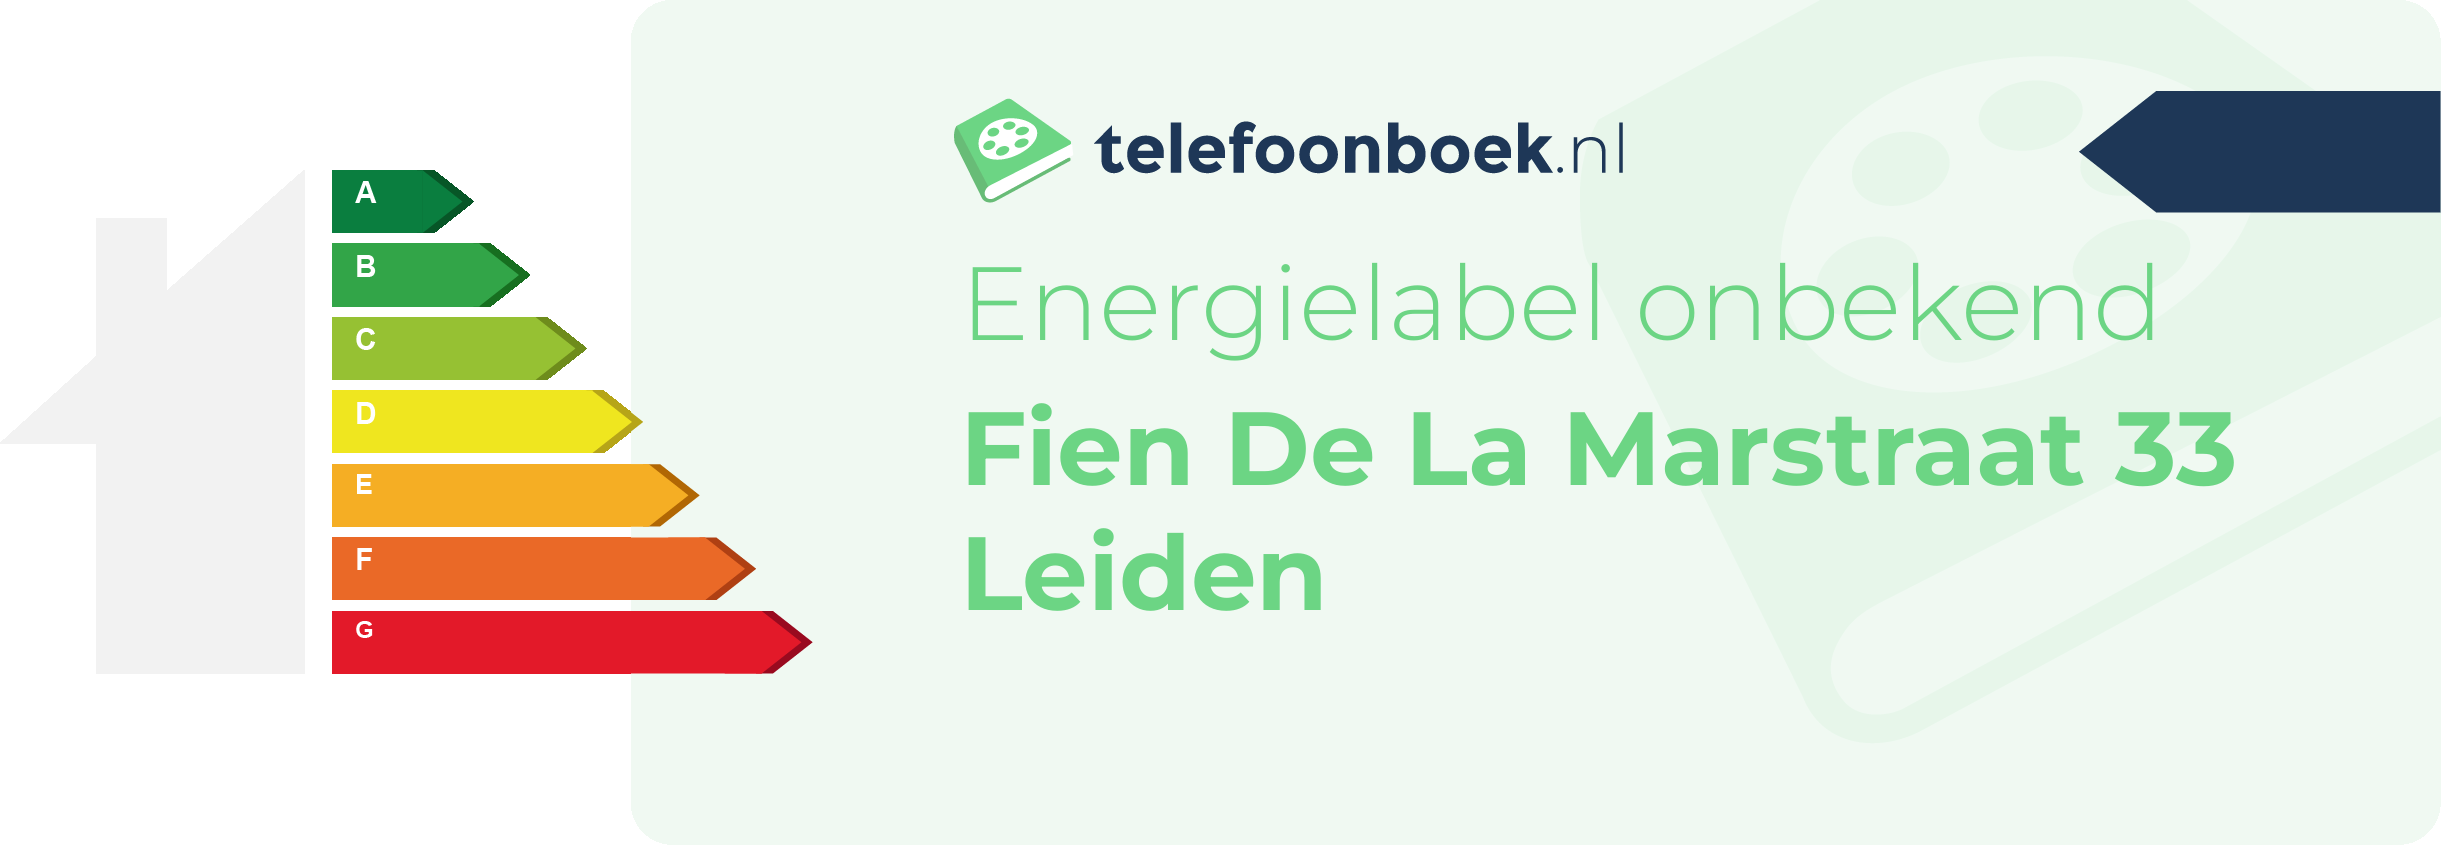 Energielabel Fien De La Marstraat 33 Leiden